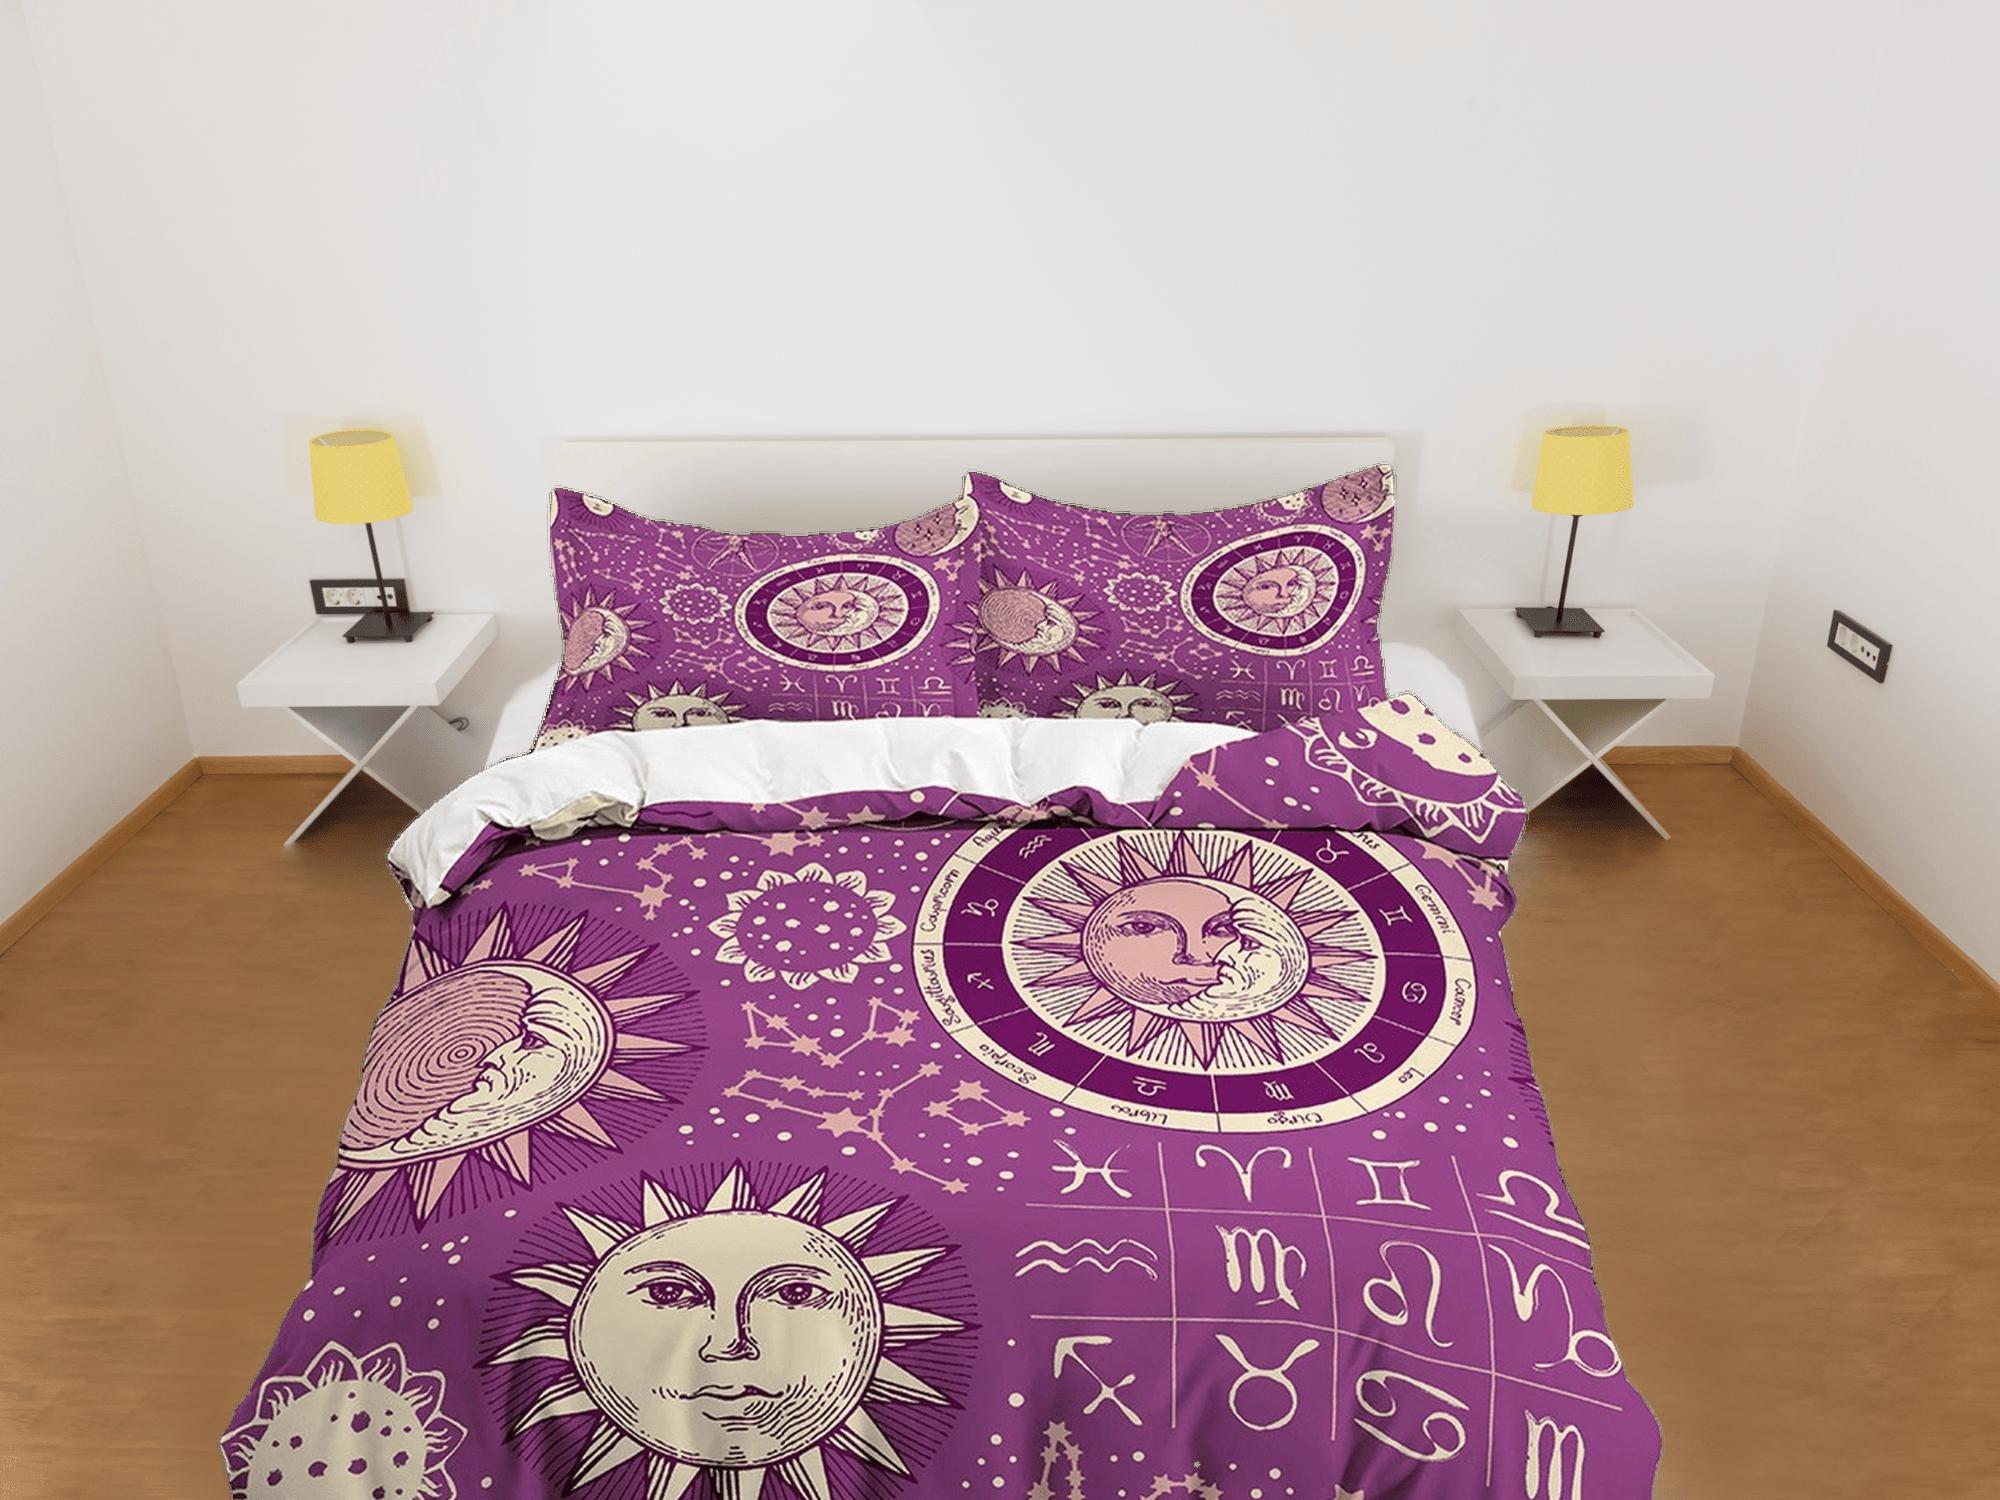 daintyduvet Celestial violet bedding, witchy decor dorm bedding, aesthetic duvet, boho bedding set full king queen, astrology gift, gothic art horoscope